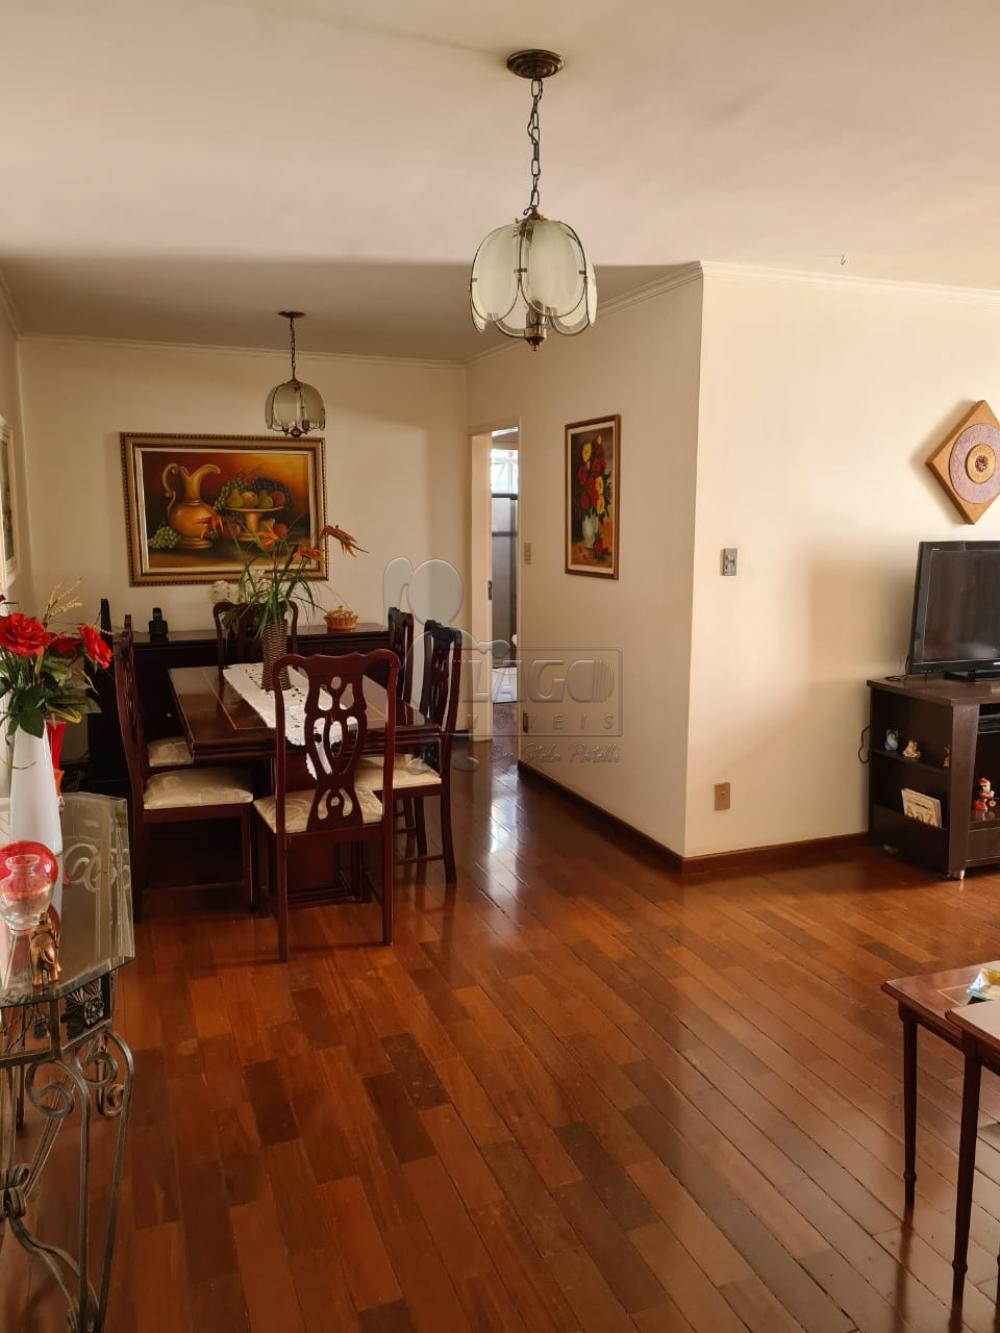 Comprar Apartamentos / Padrão em Ribeirão Preto R$ 300.000,00 - Foto 7